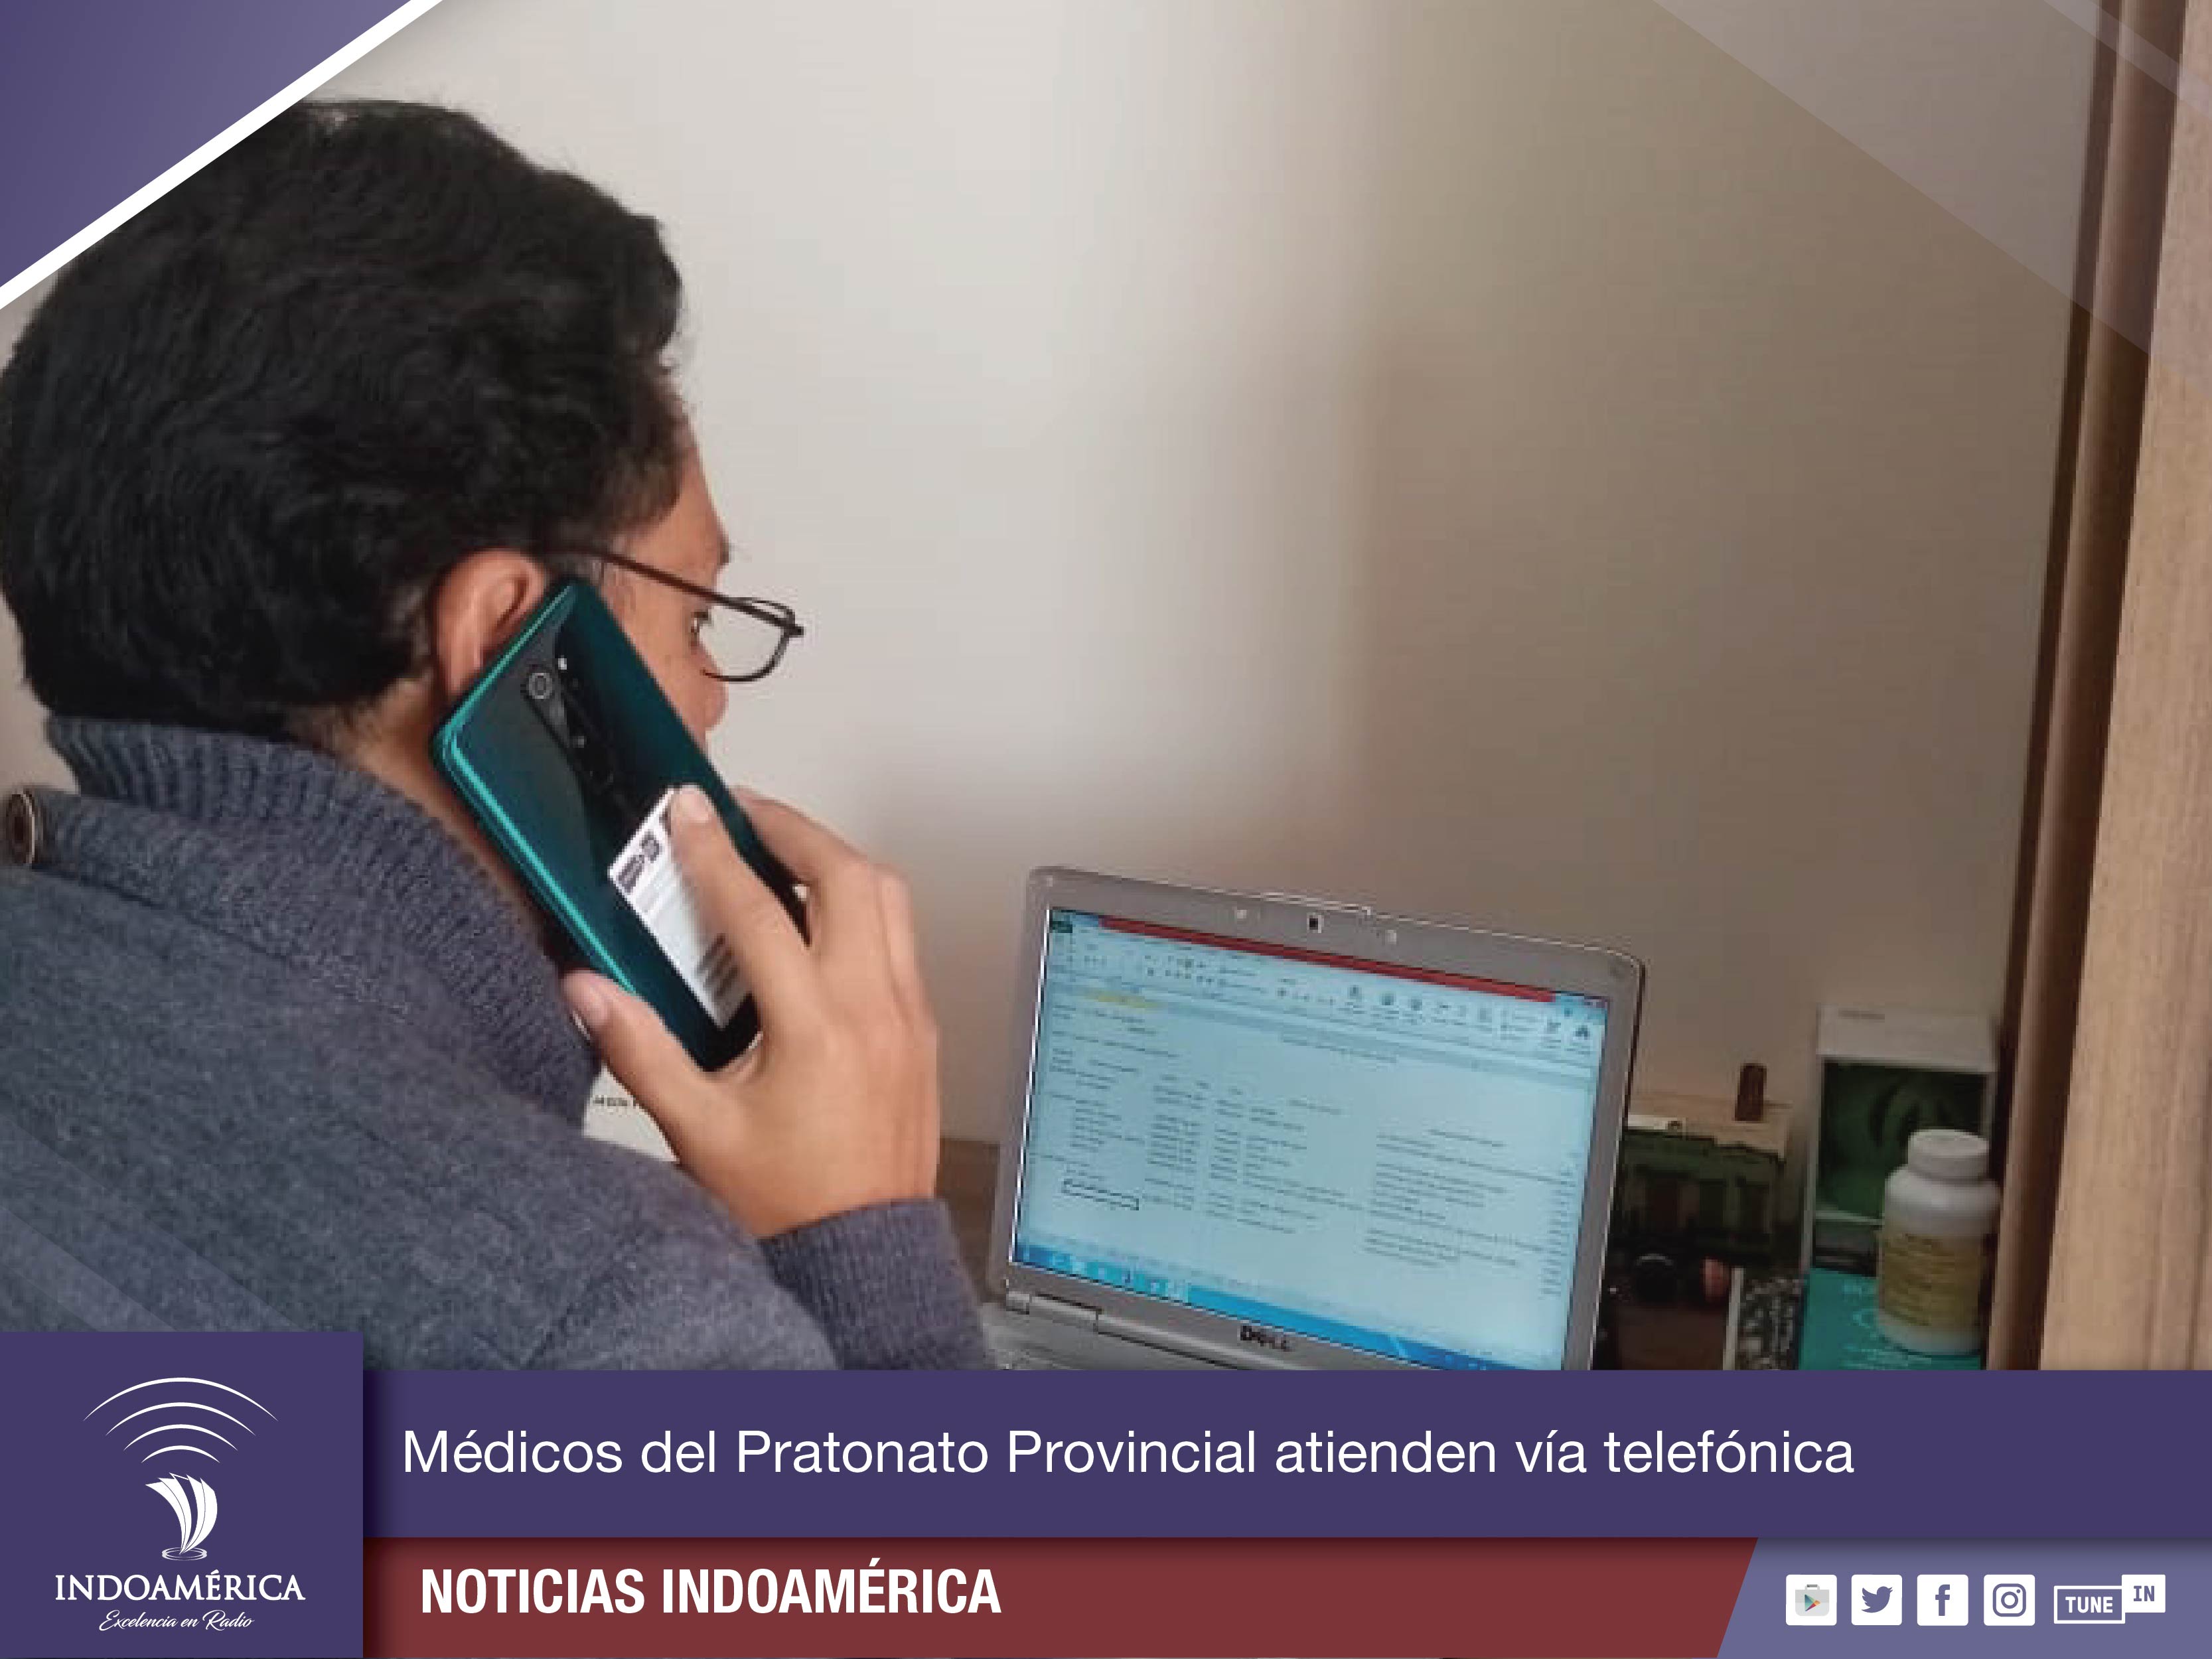 Patronato Provincial de Tungurahua incrementa la atención médica vía telefónica